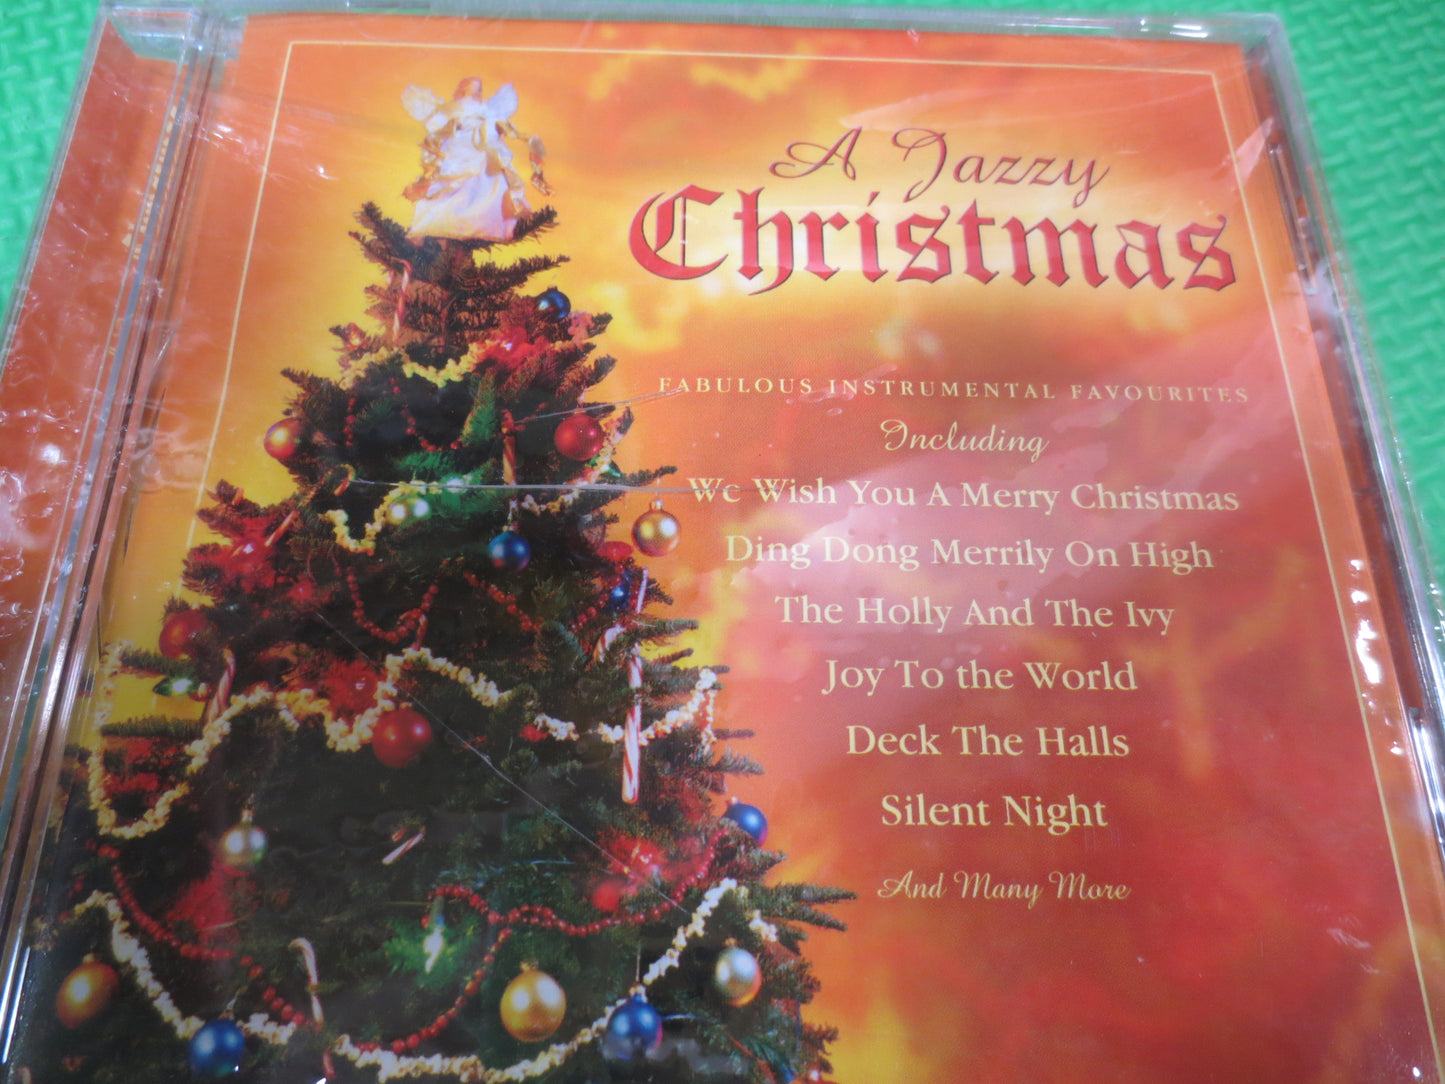 CHRISTMAS Cd, JAZZ Cd, CHRISTMAS Music Cd, Jazz Music Cd, Jazz Compact Disc, Christmas Songs Cd, Cd's Christmas Songs